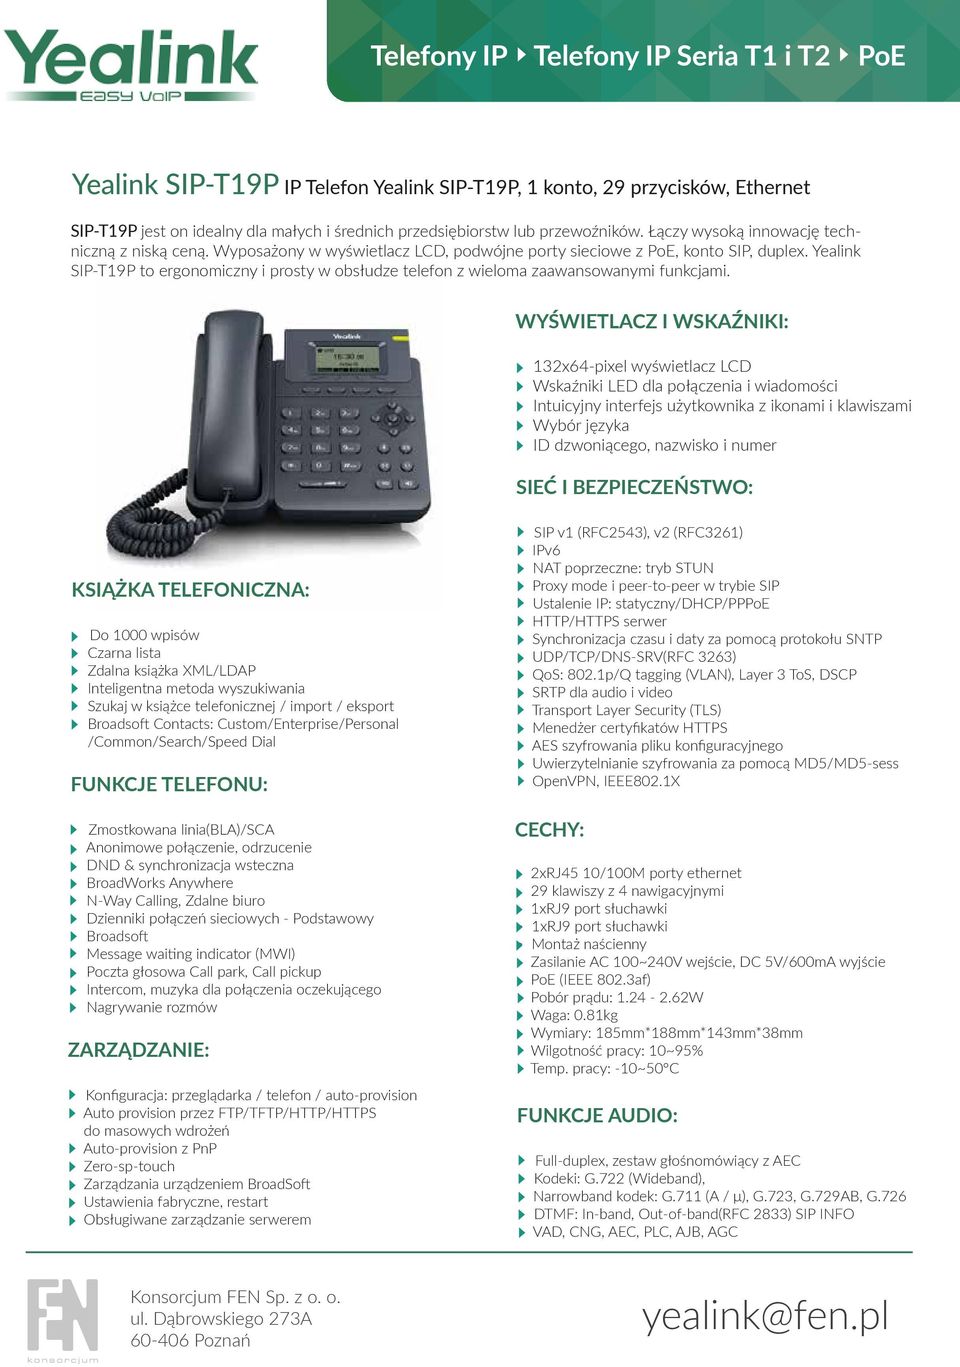 Yealink SIP-T19P to ergonomiczny i prosty w obsłudze telefon z wieloma zaawansowanymi funkcjami.